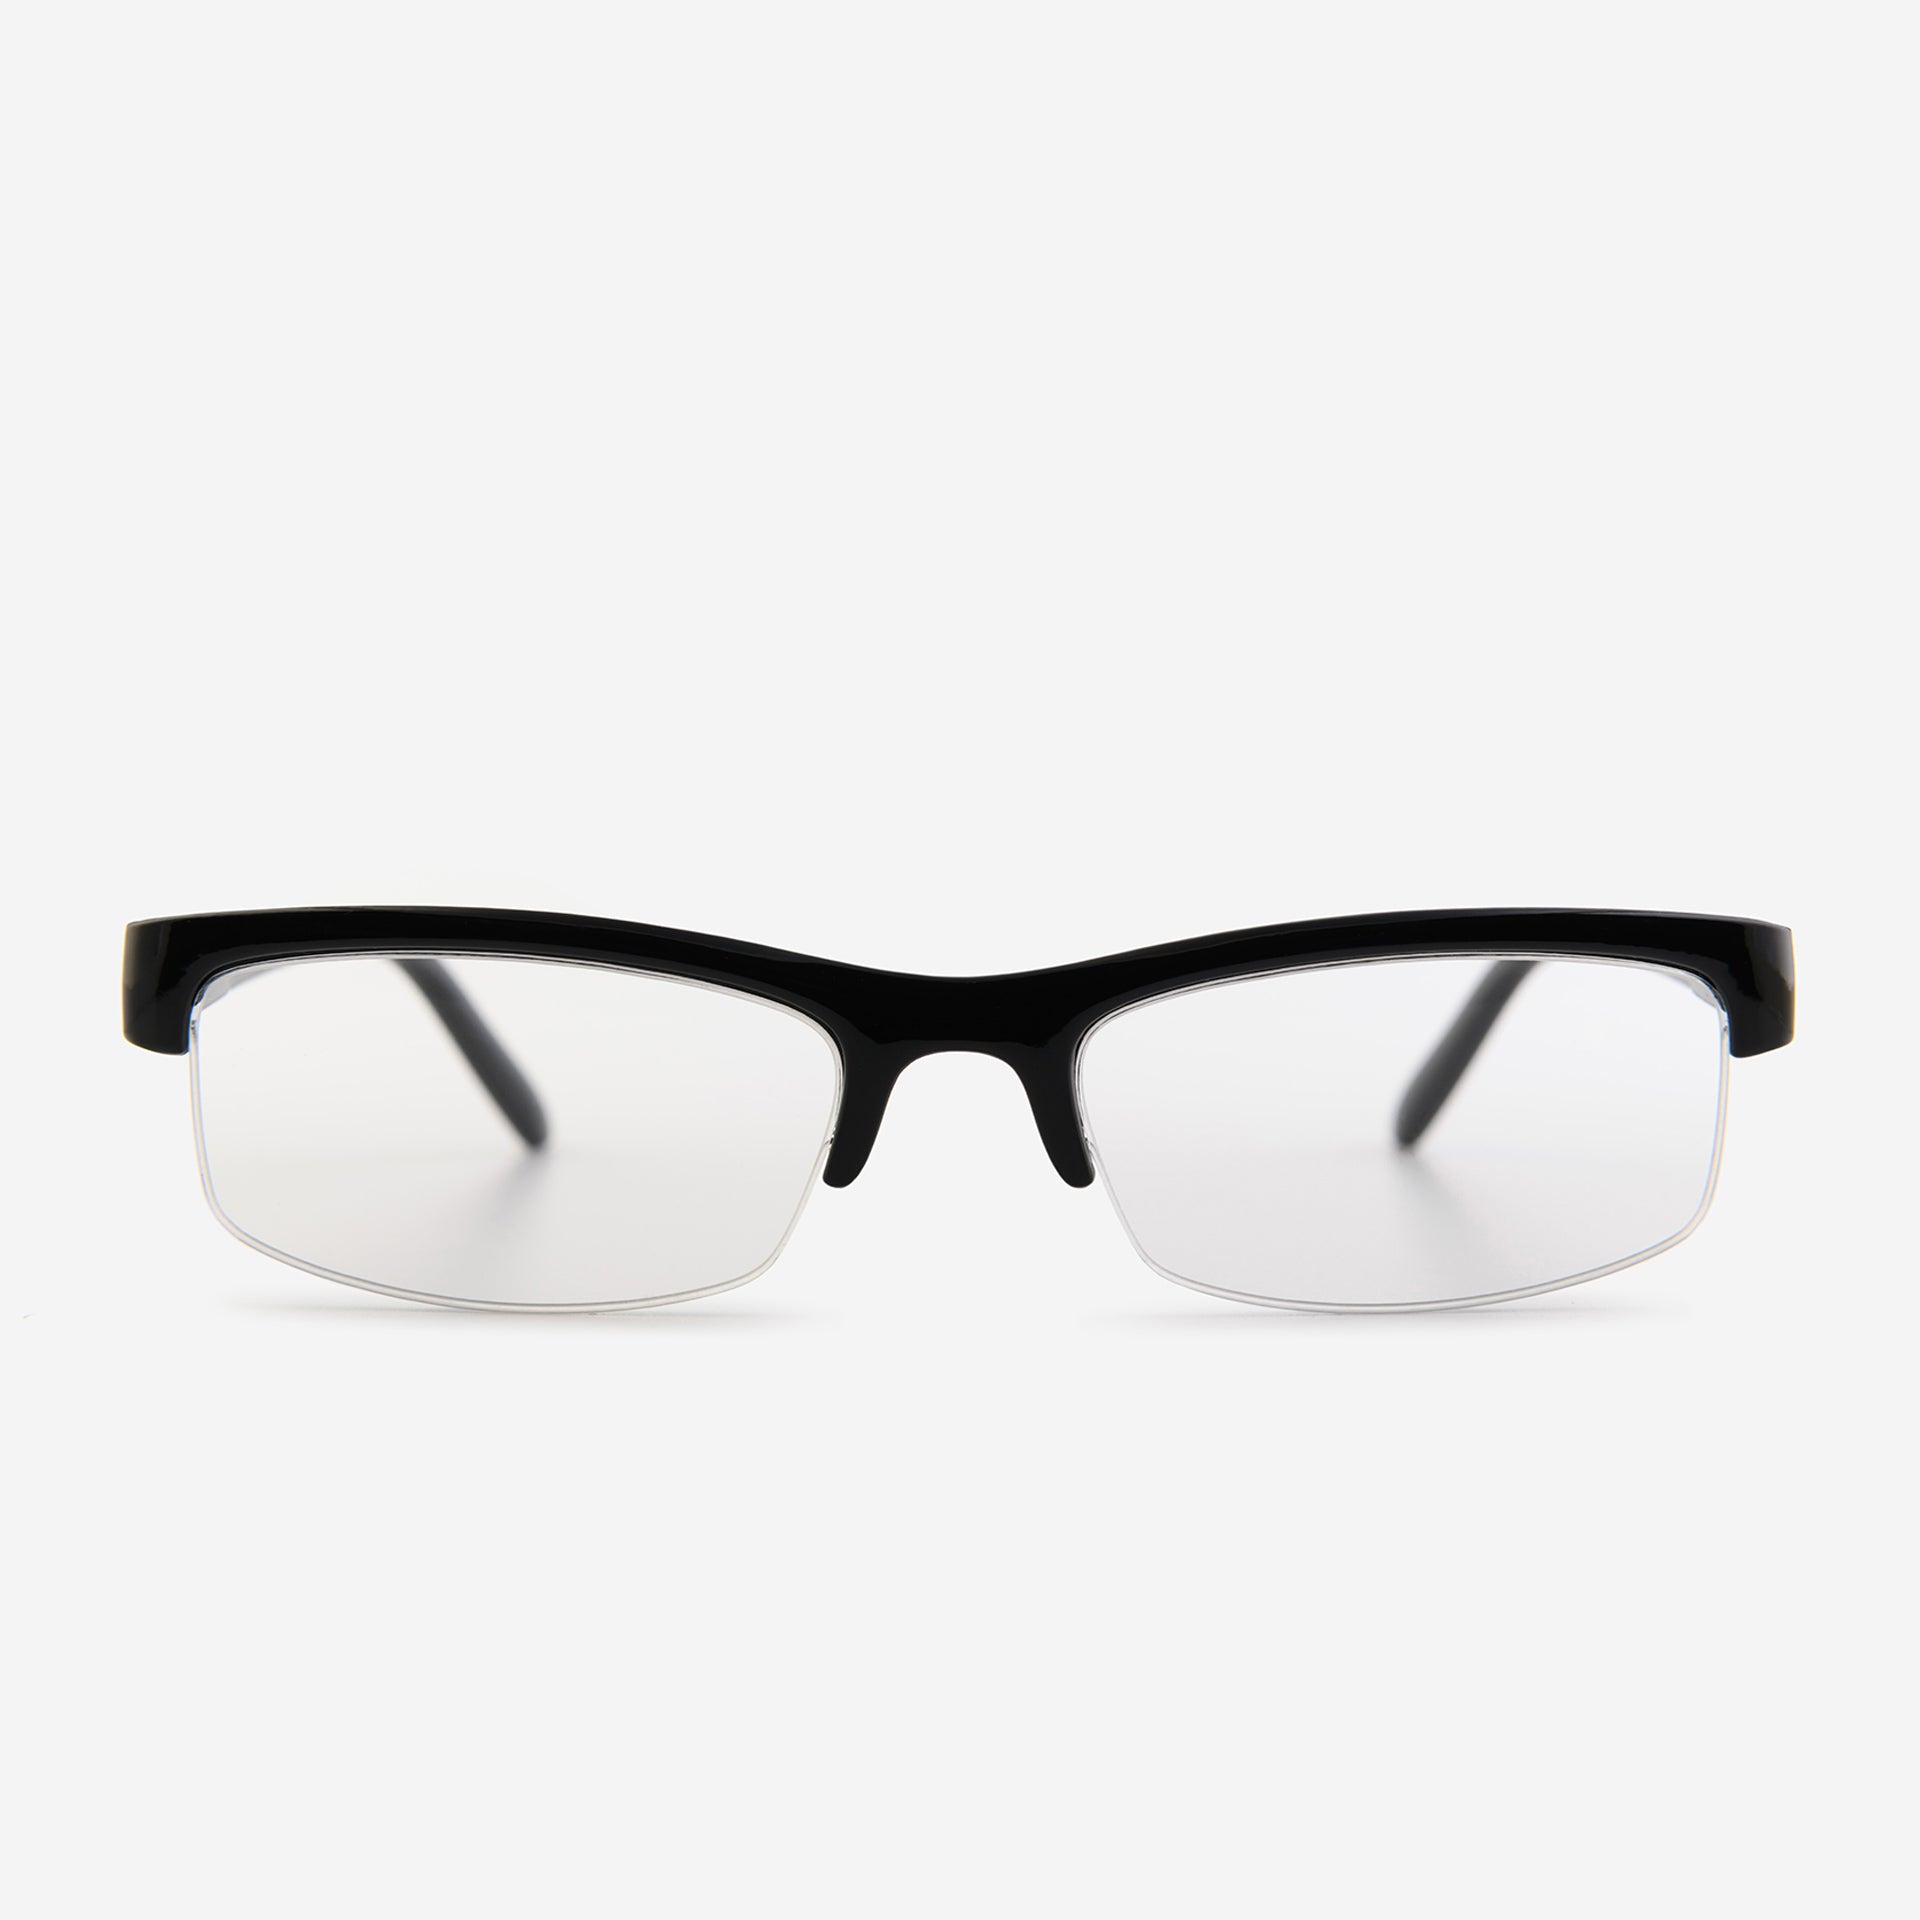 Black half-rim reading glasses